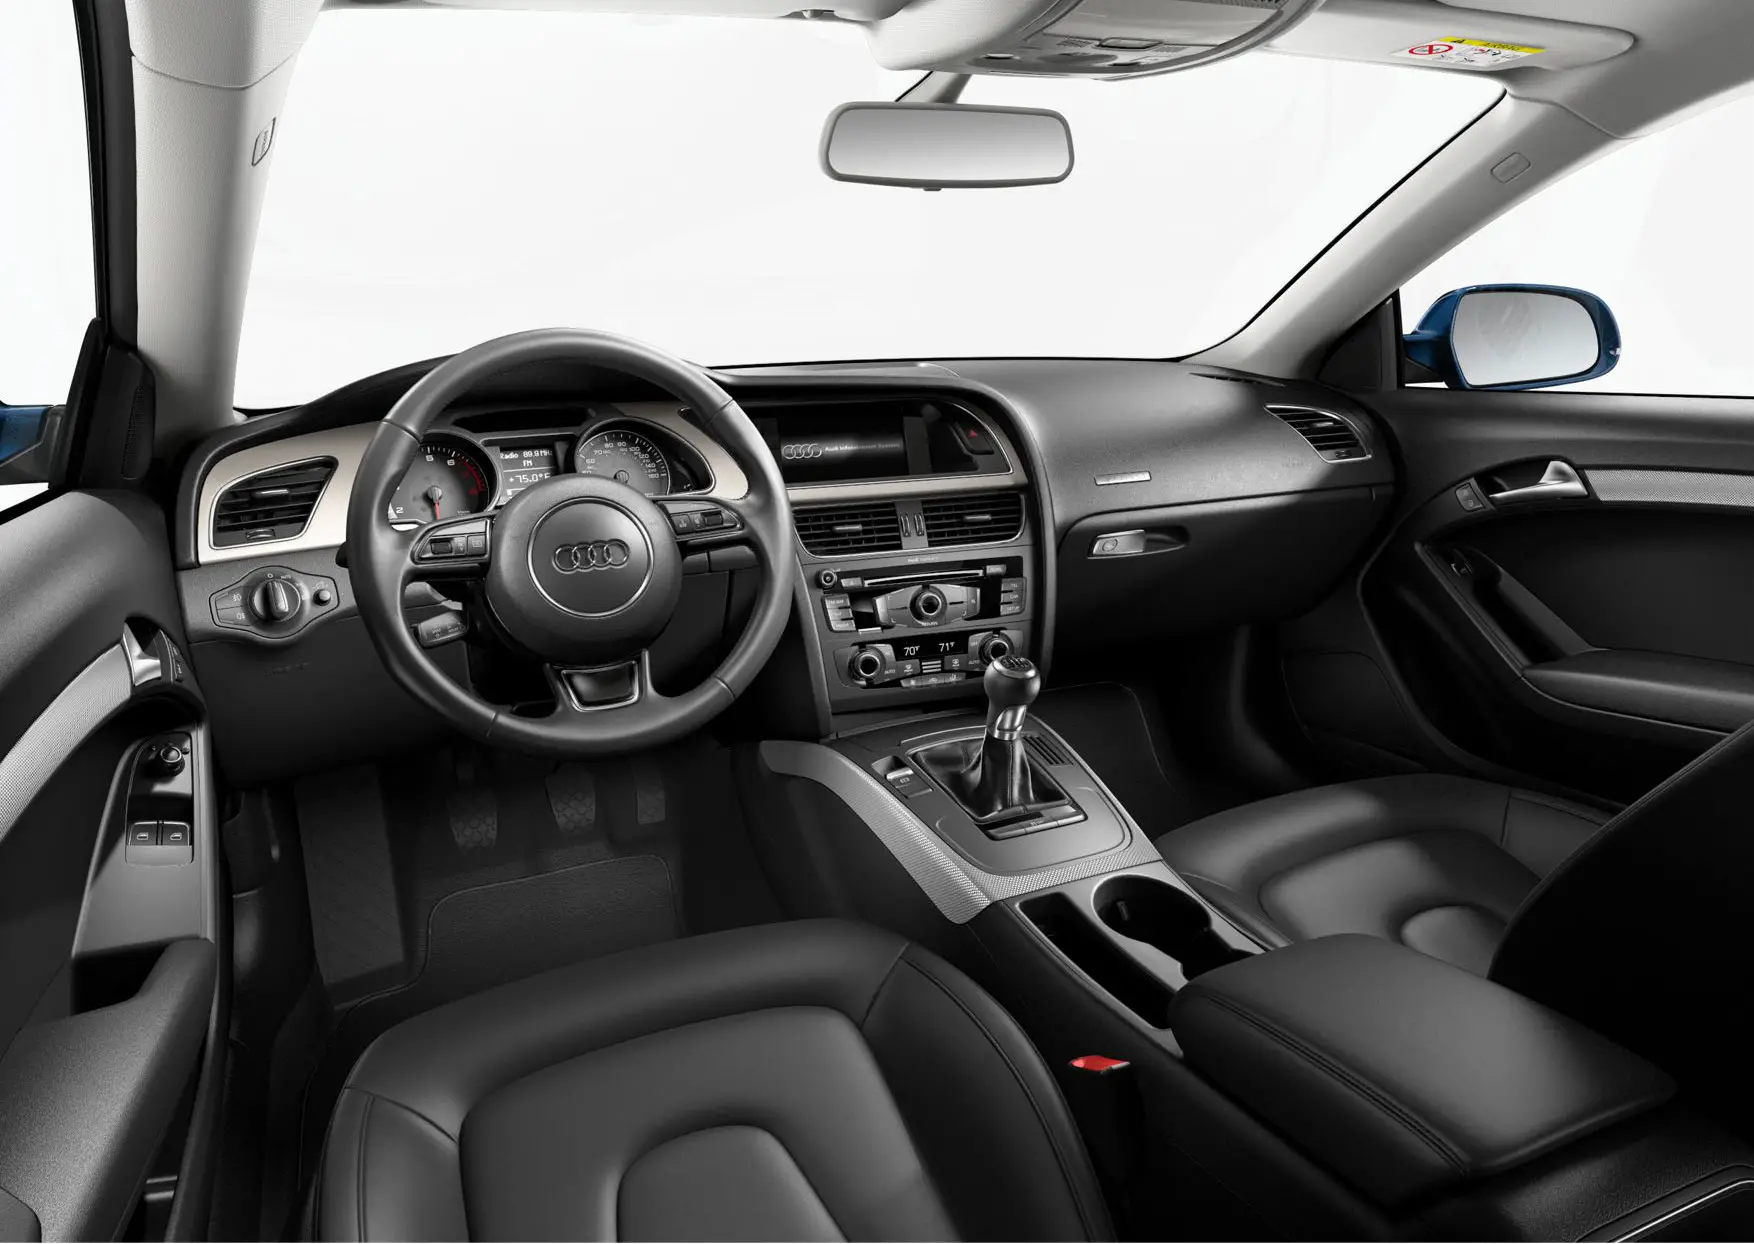 Audi A5 Premium Plus Coupe 2016 Interior Image Gallery